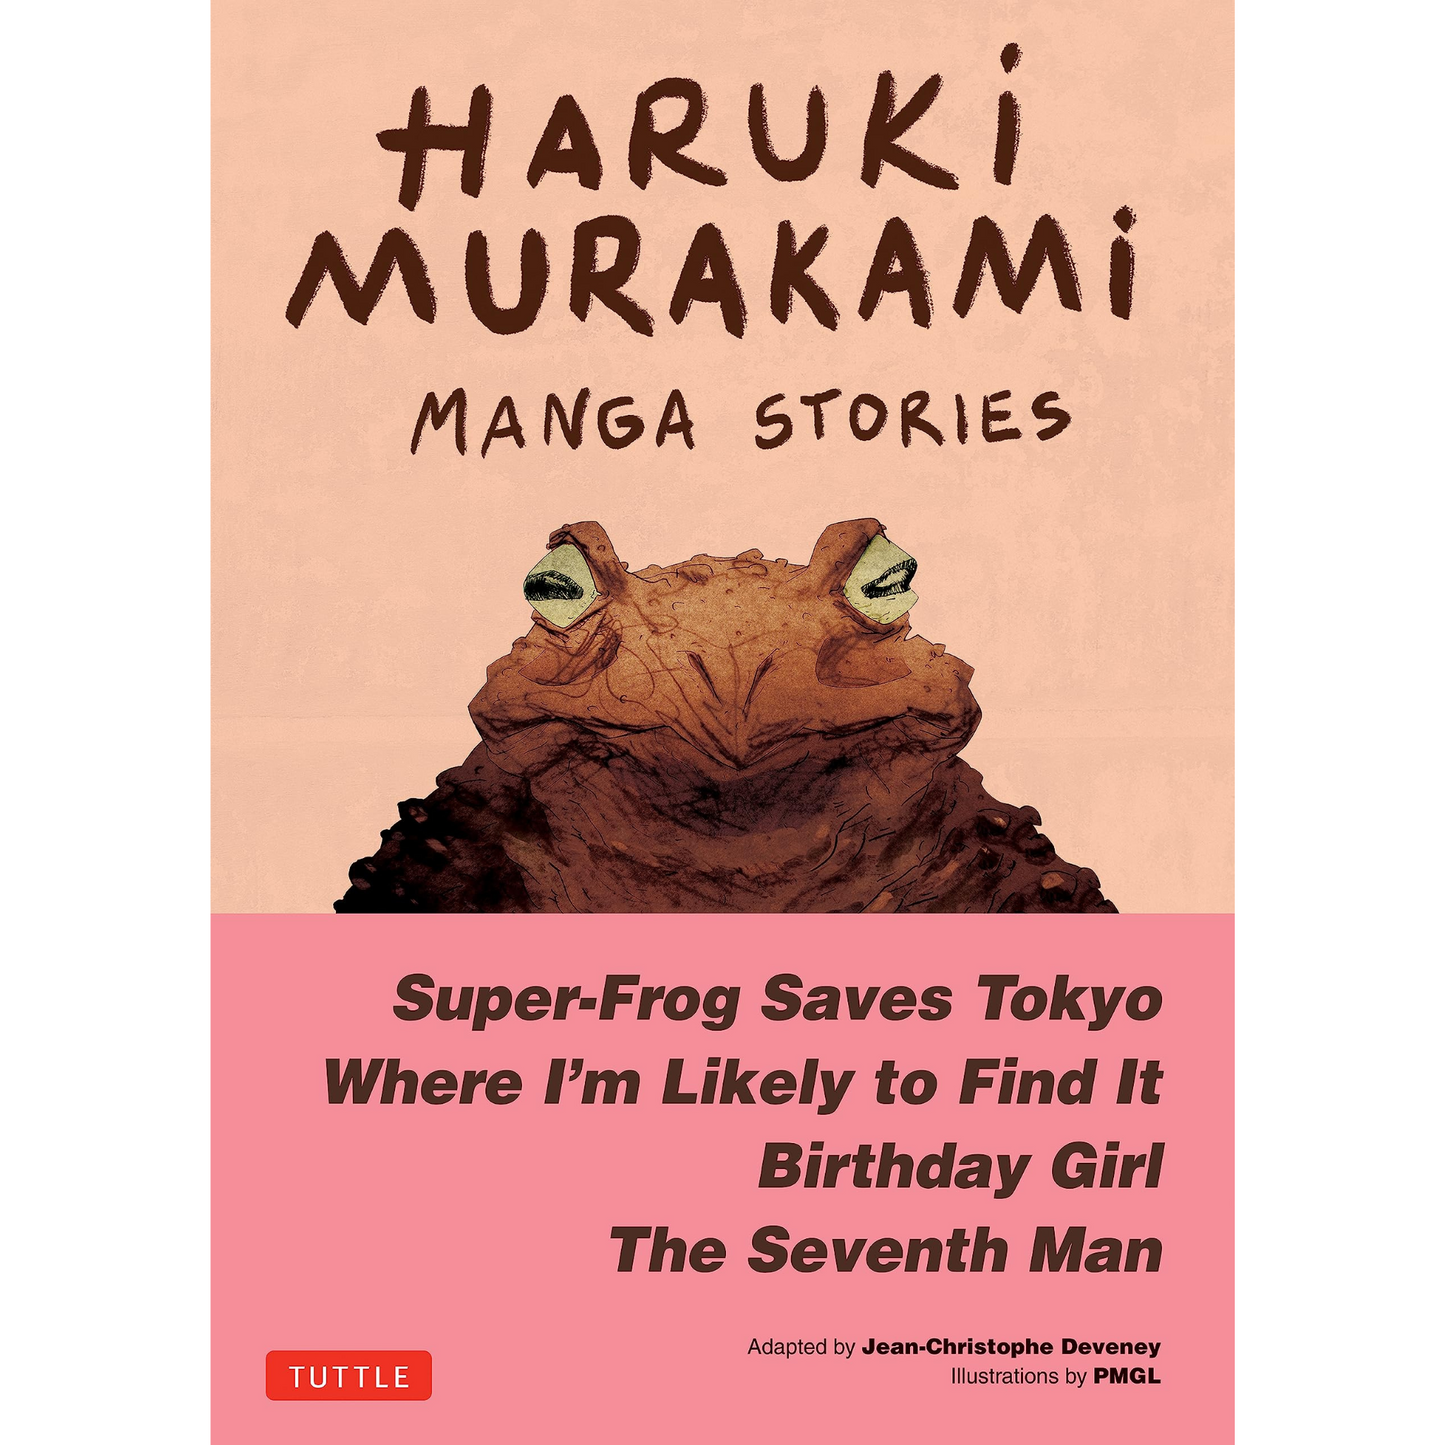 Load image into Gallery viewer, Haruki Murakami Manga Stories 1
